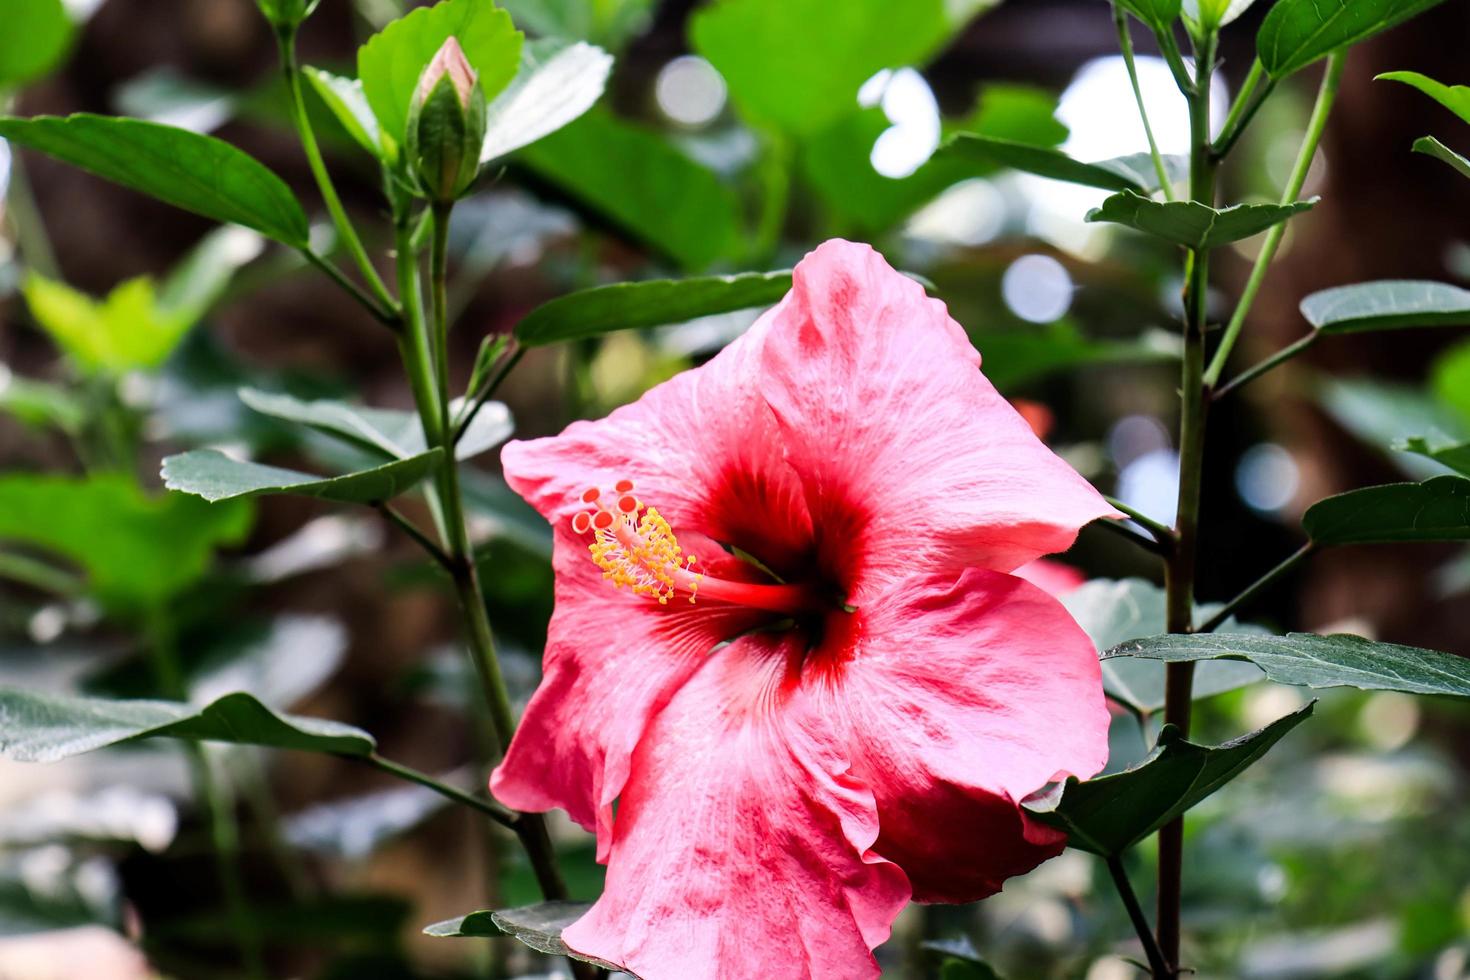 flor de hibisco hibiscus rosa-sinensis l es un arbusto de la familia de las malváceas originario del este de Asia y ampliamente cultivado como planta ornamental en regiones tropicales y subtropicales. foto